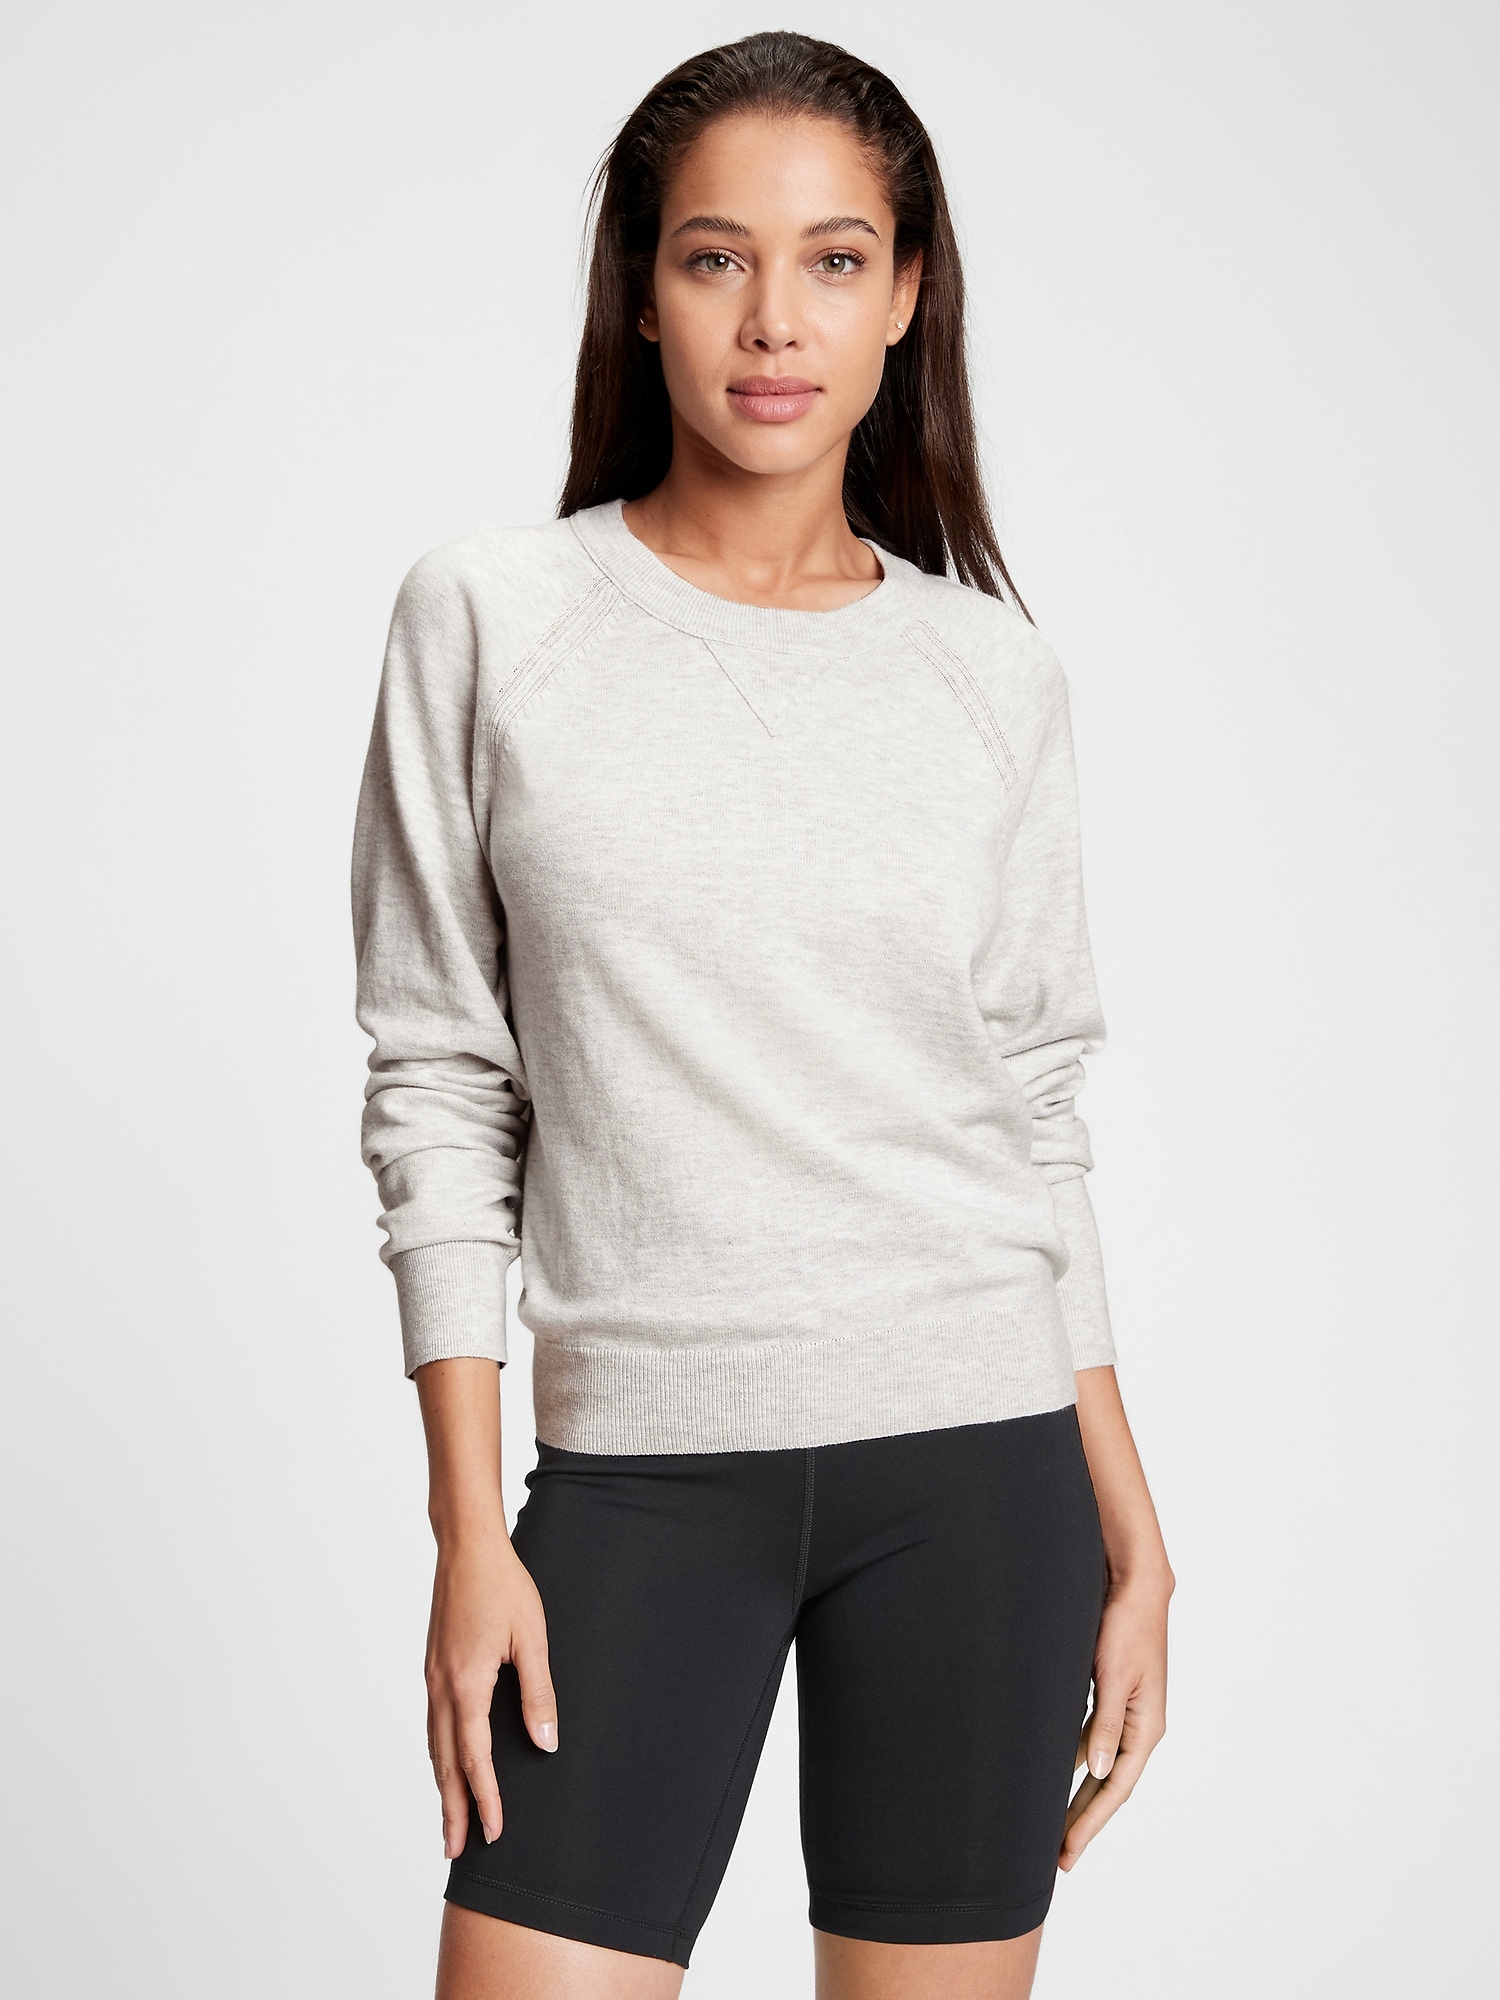 Raglan Crewneck Sweater | Gap Factory